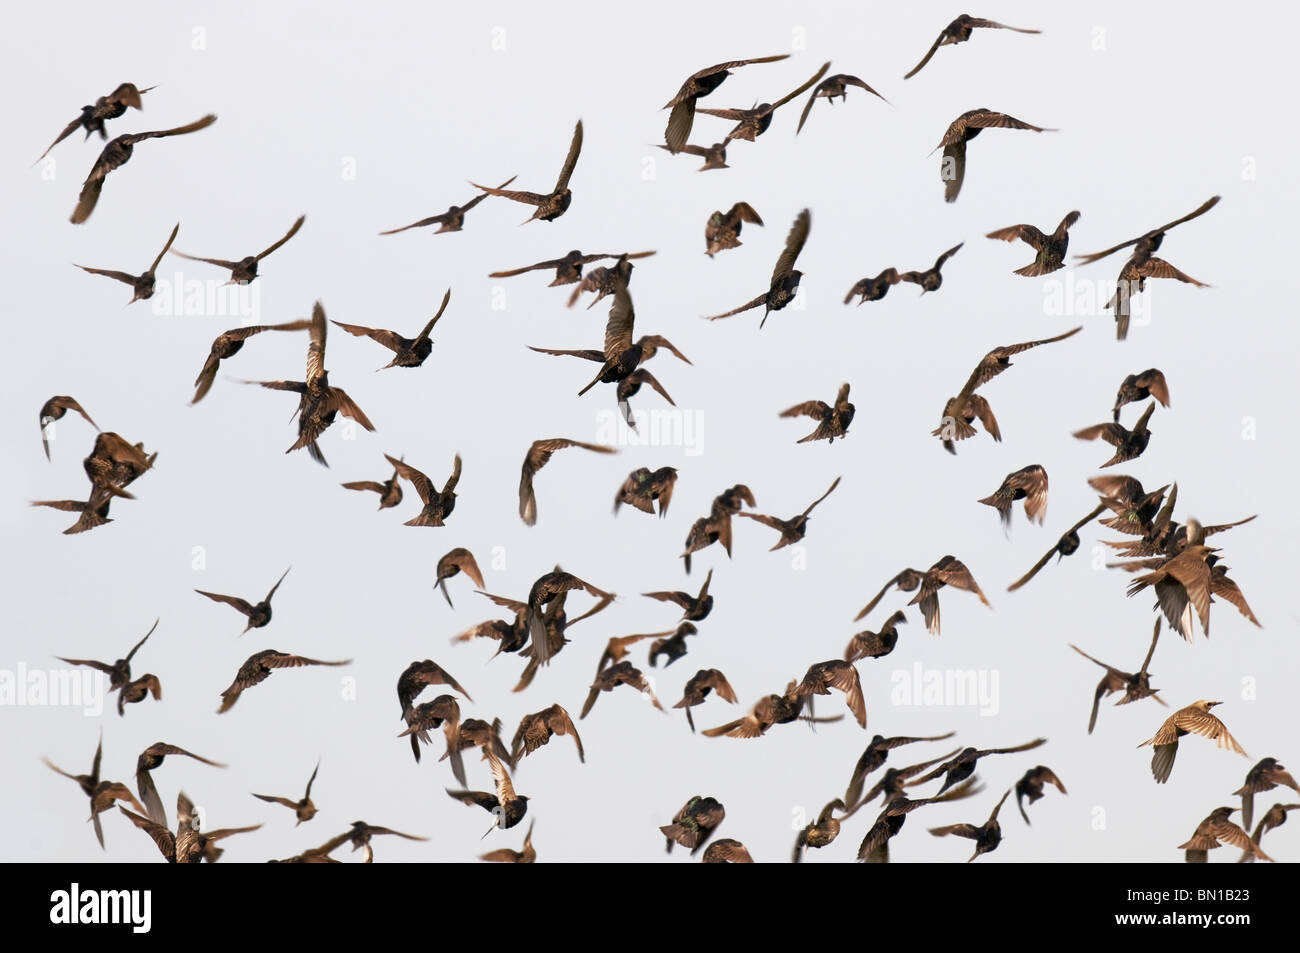 Un gregge di stelle in volo Sturnus vulgarismi Sturnidae. Foto Stock